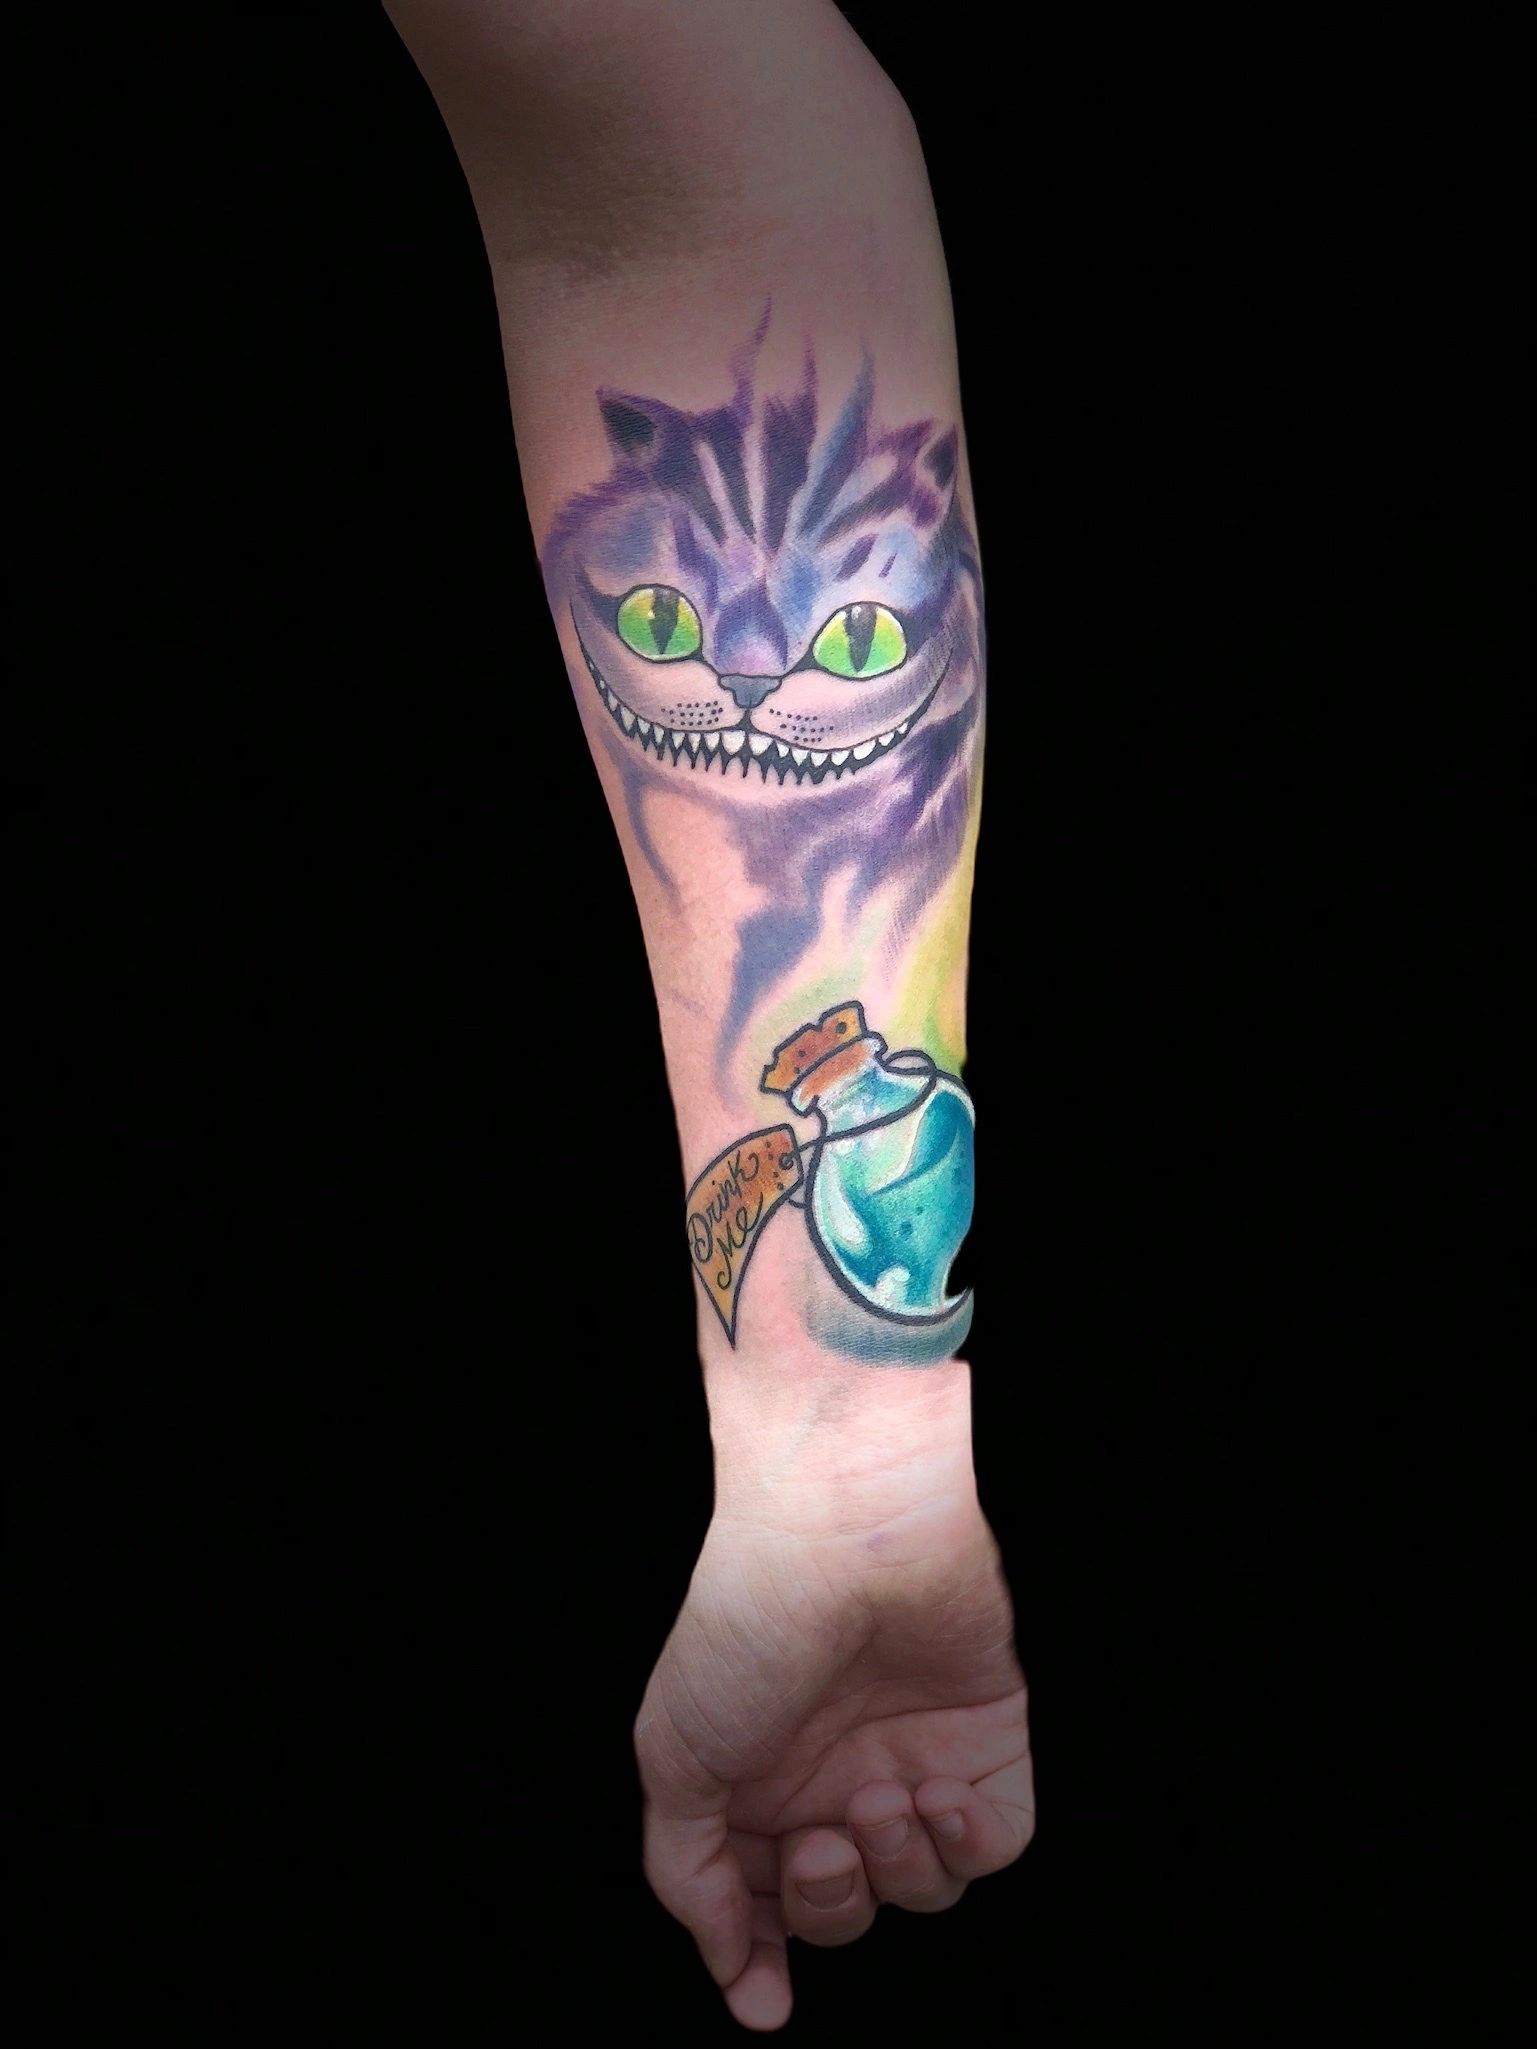 Cheshire cat, Alice in wonderland tattoo, Cheshire cat tattoo